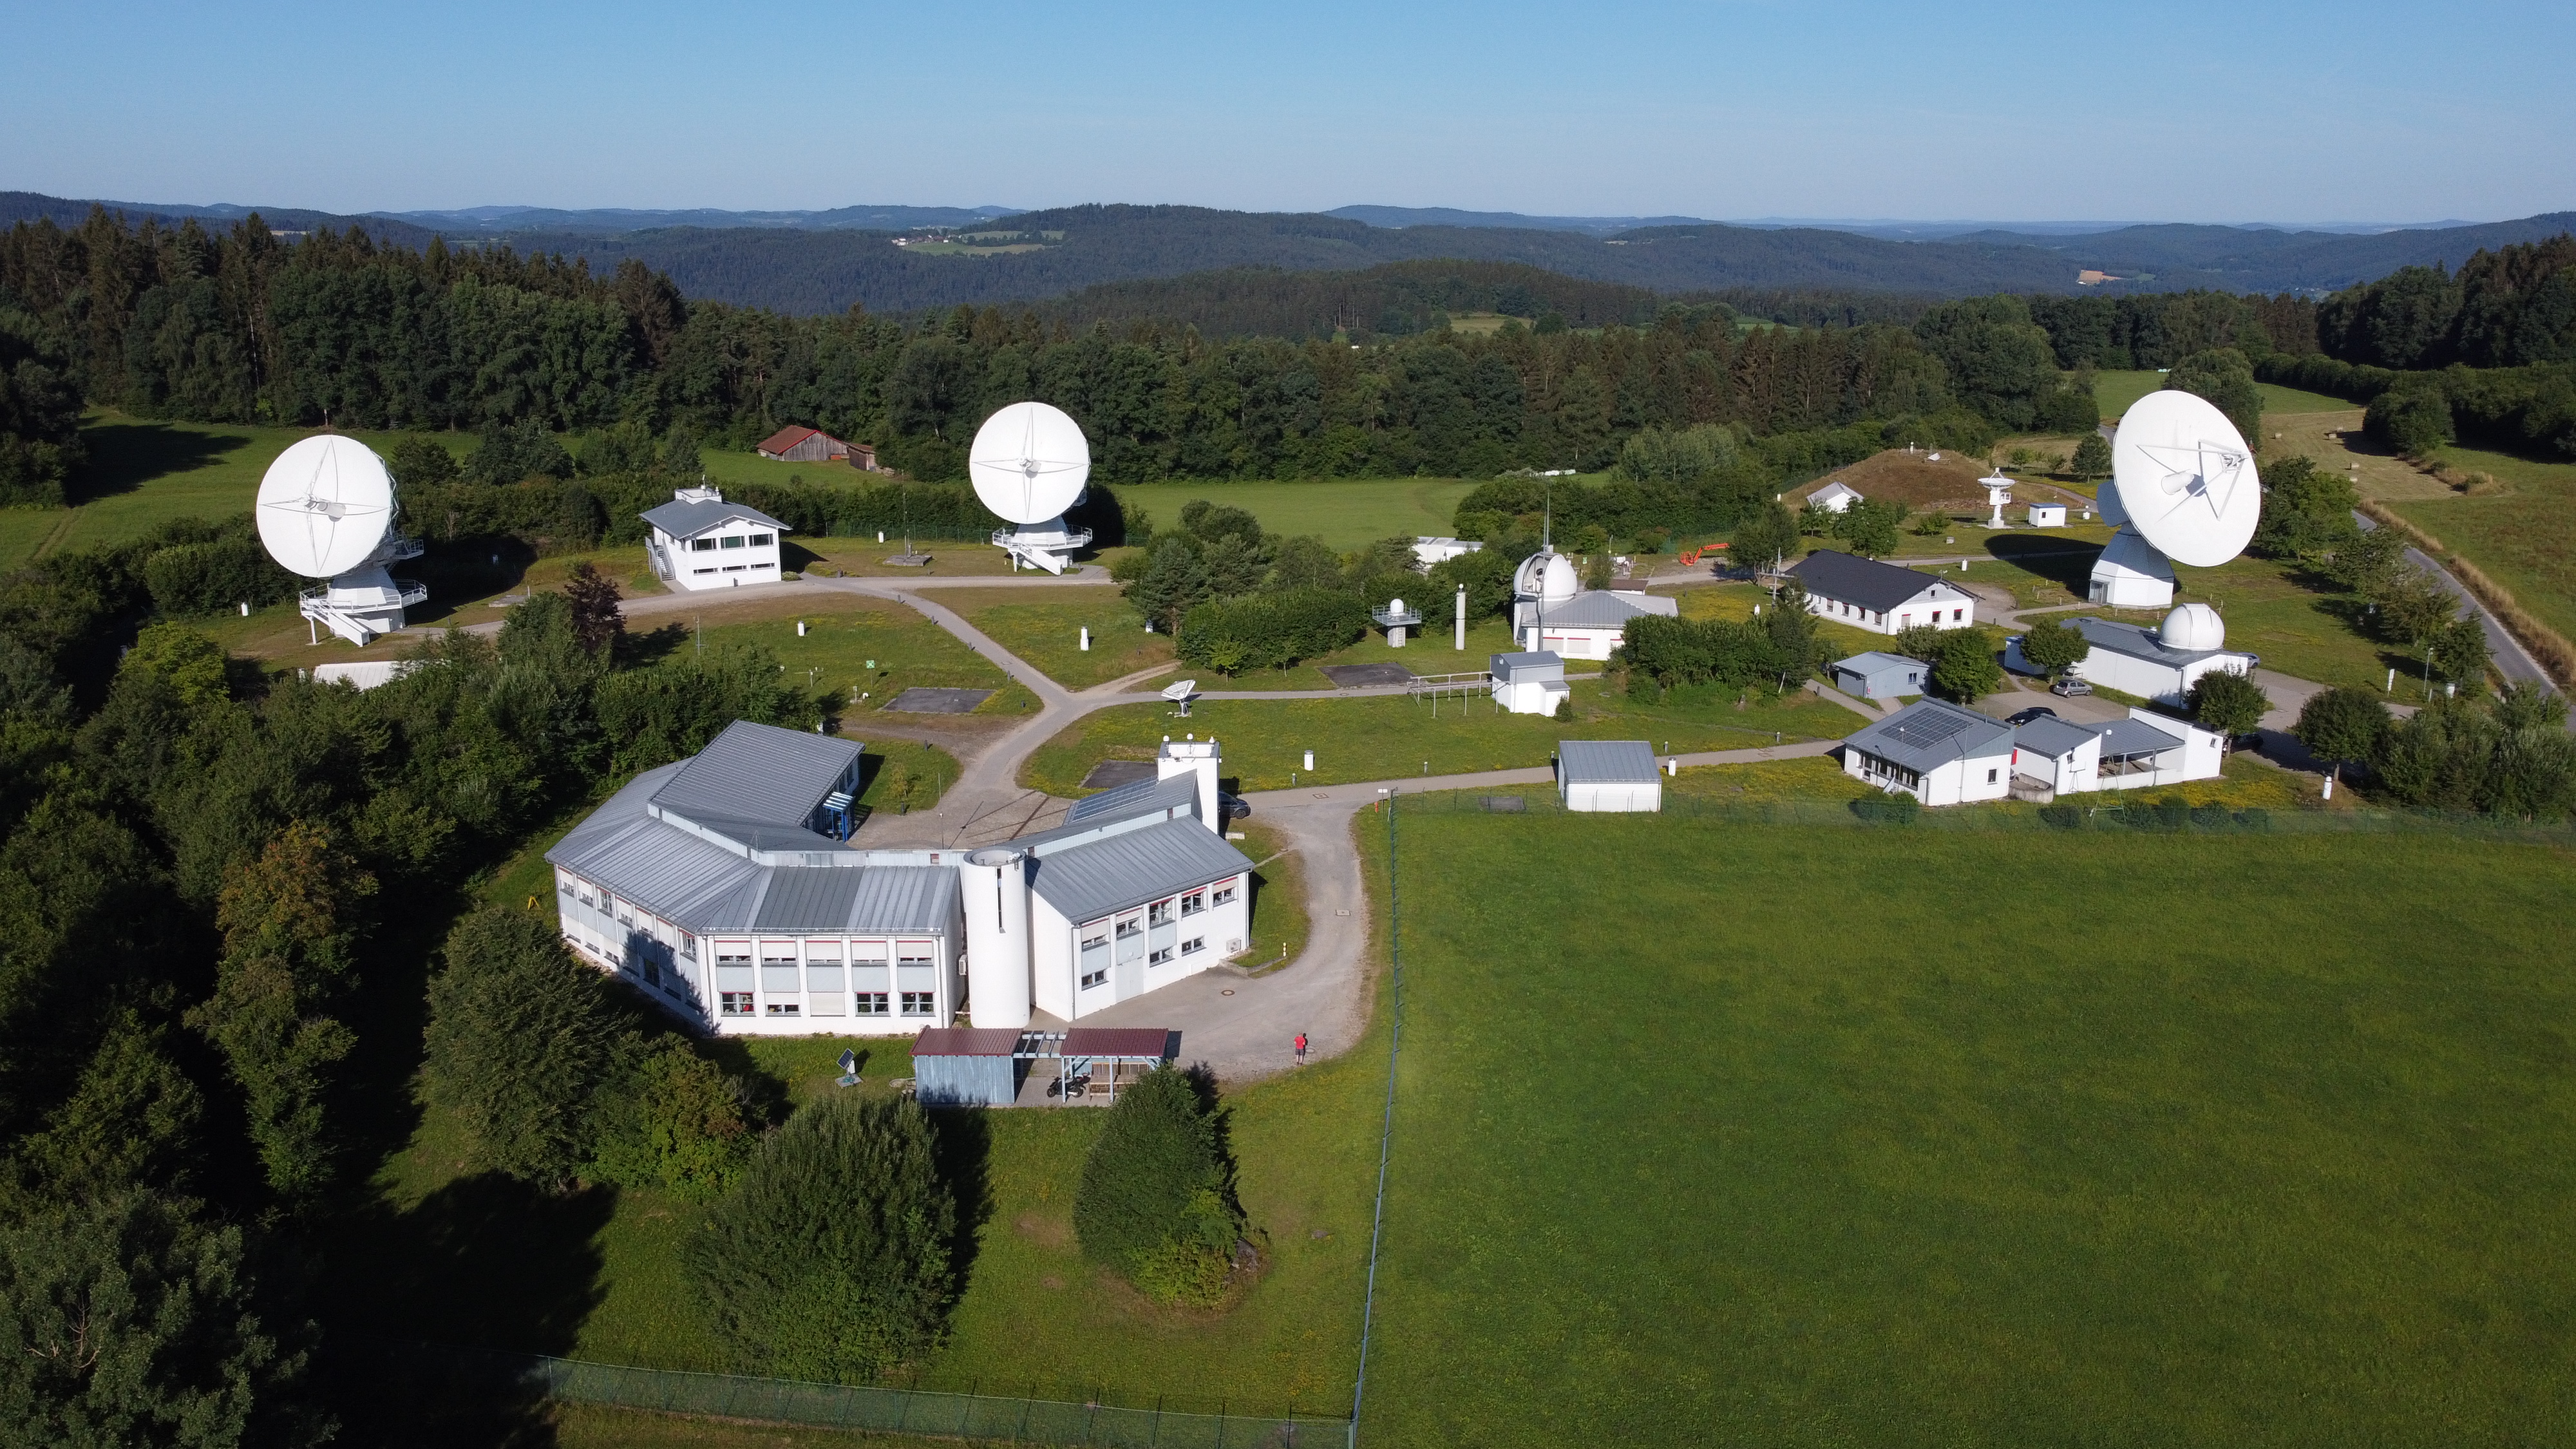 Luftbild des Geodätischen Observatoriums Wettzell